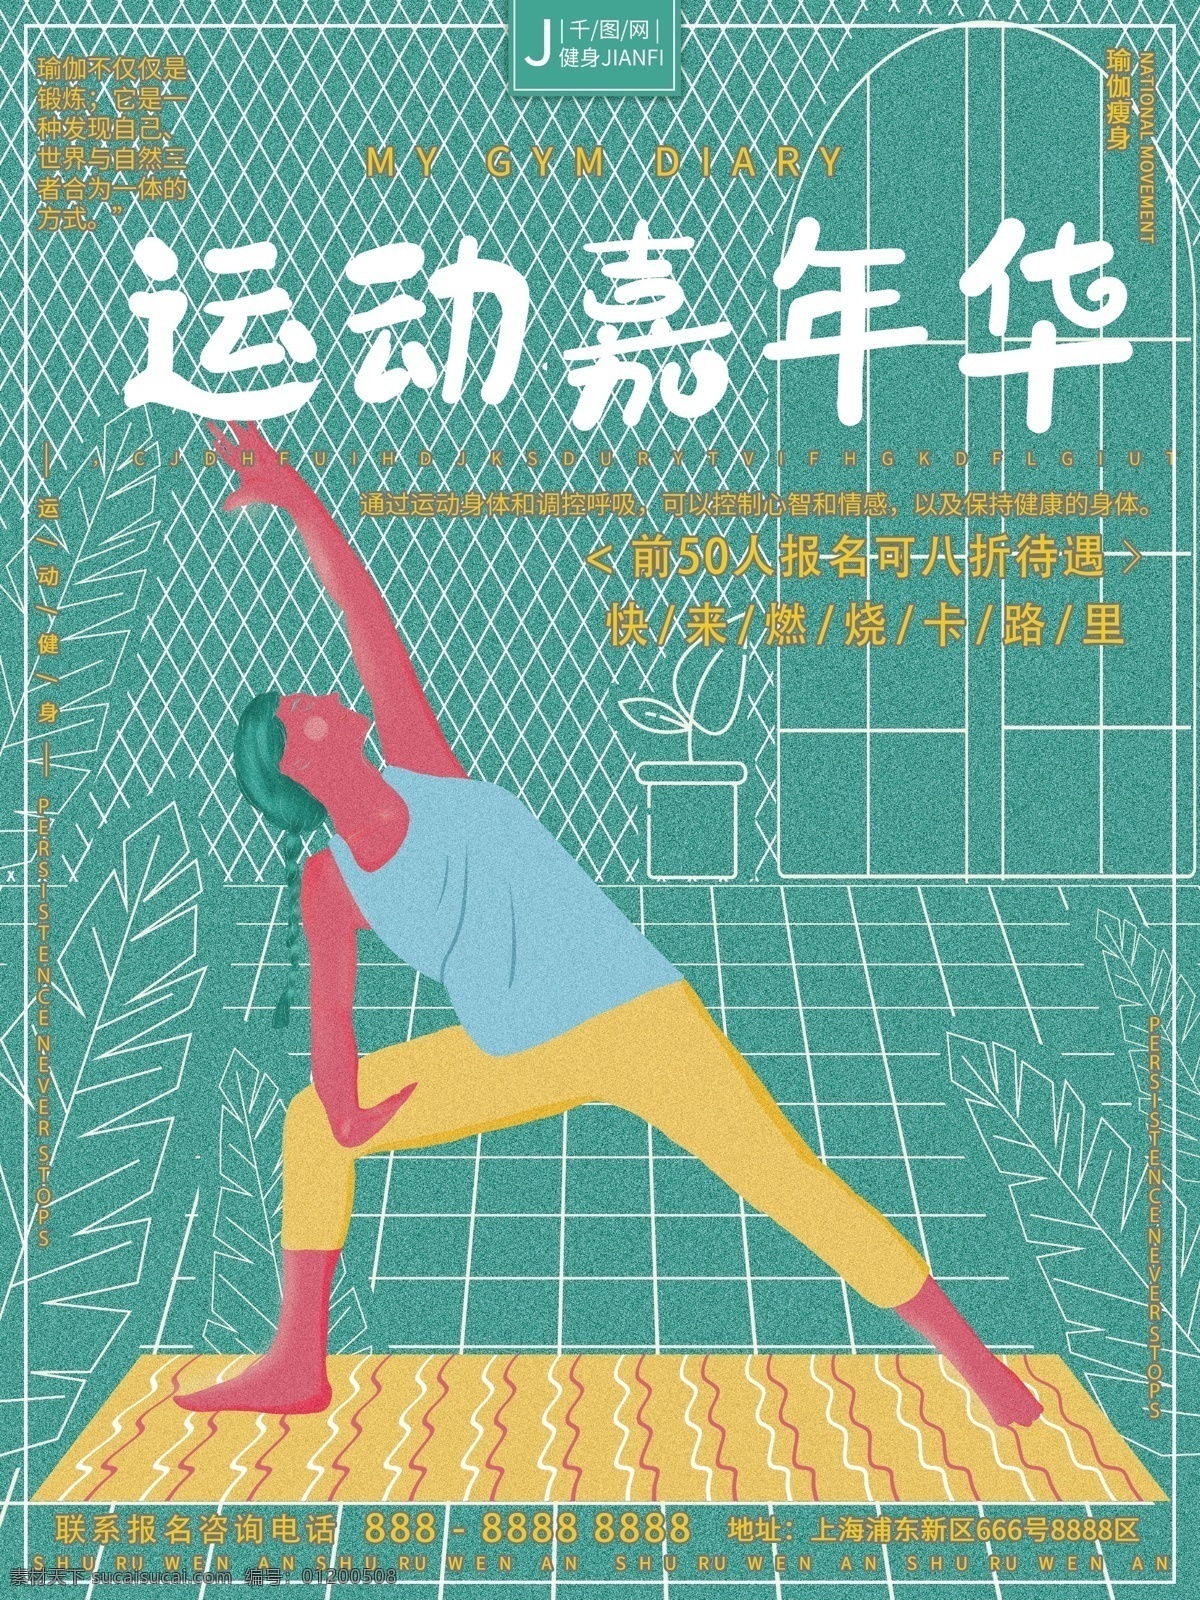 原创 手绘 虚实 象生 瑜伽 健身 运动 嘉年华 海报 手绘海报 虚实象生 瑜伽海报 健身海报 运动海报